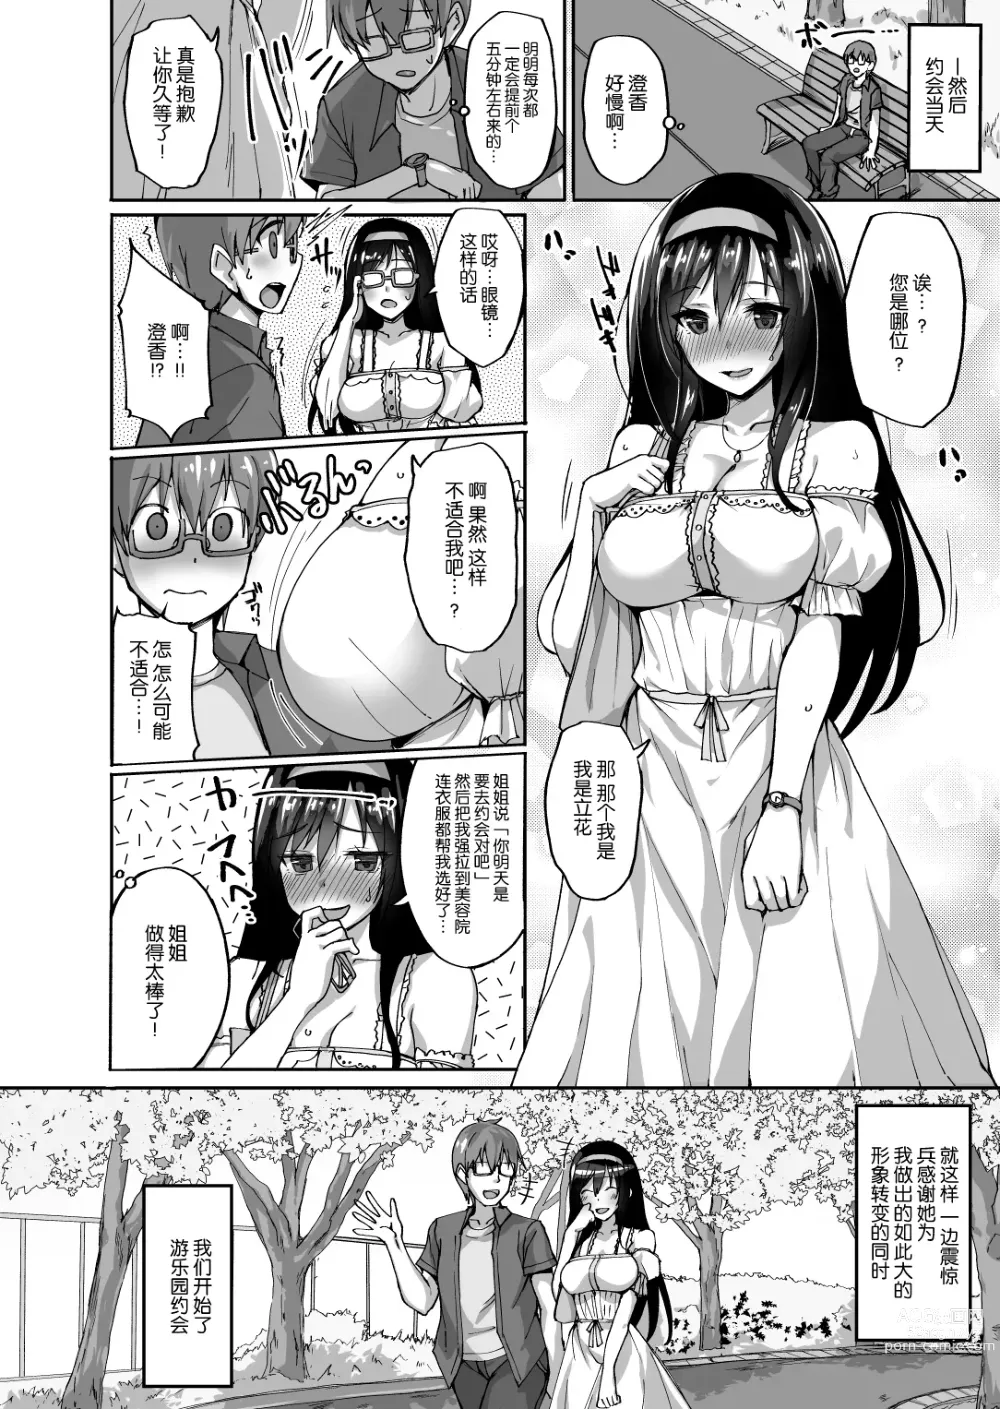 Page 11 of manga Netorare Kouhai Kanojo - underclass girlfriends NTR Story